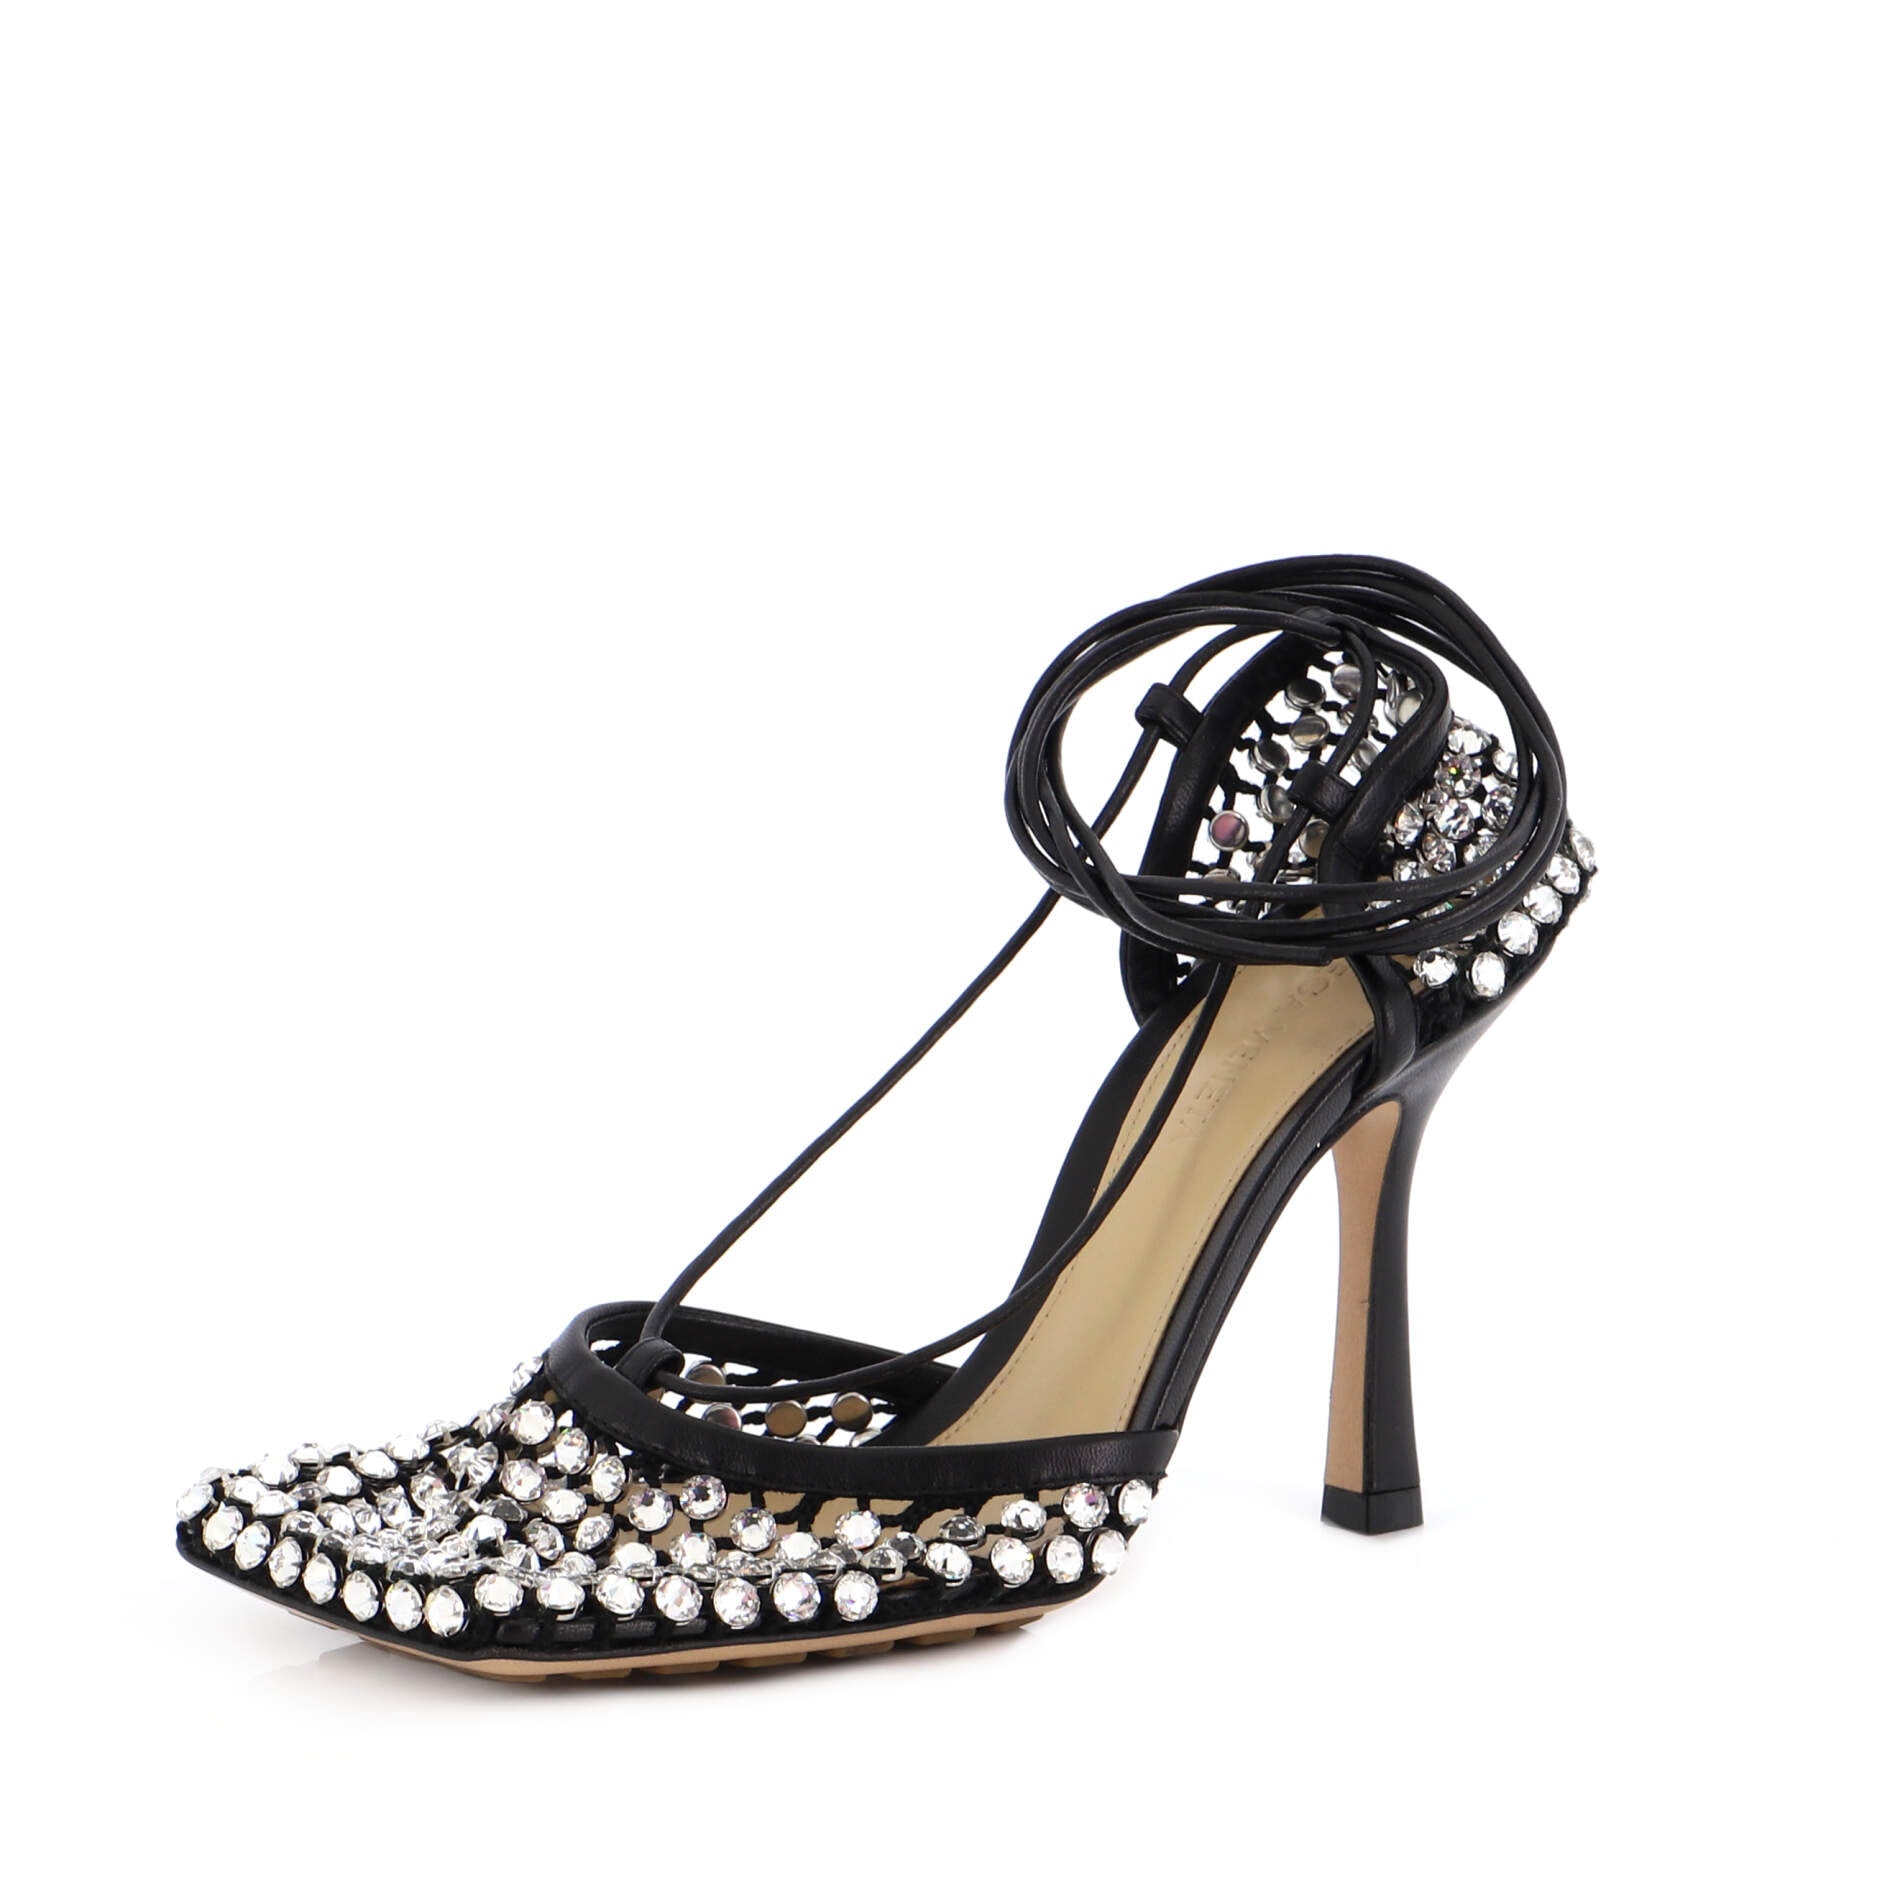 Our new cryatal mesh heels ✨ #heels #sparklyshoes #partyheels #fyp | TikTok